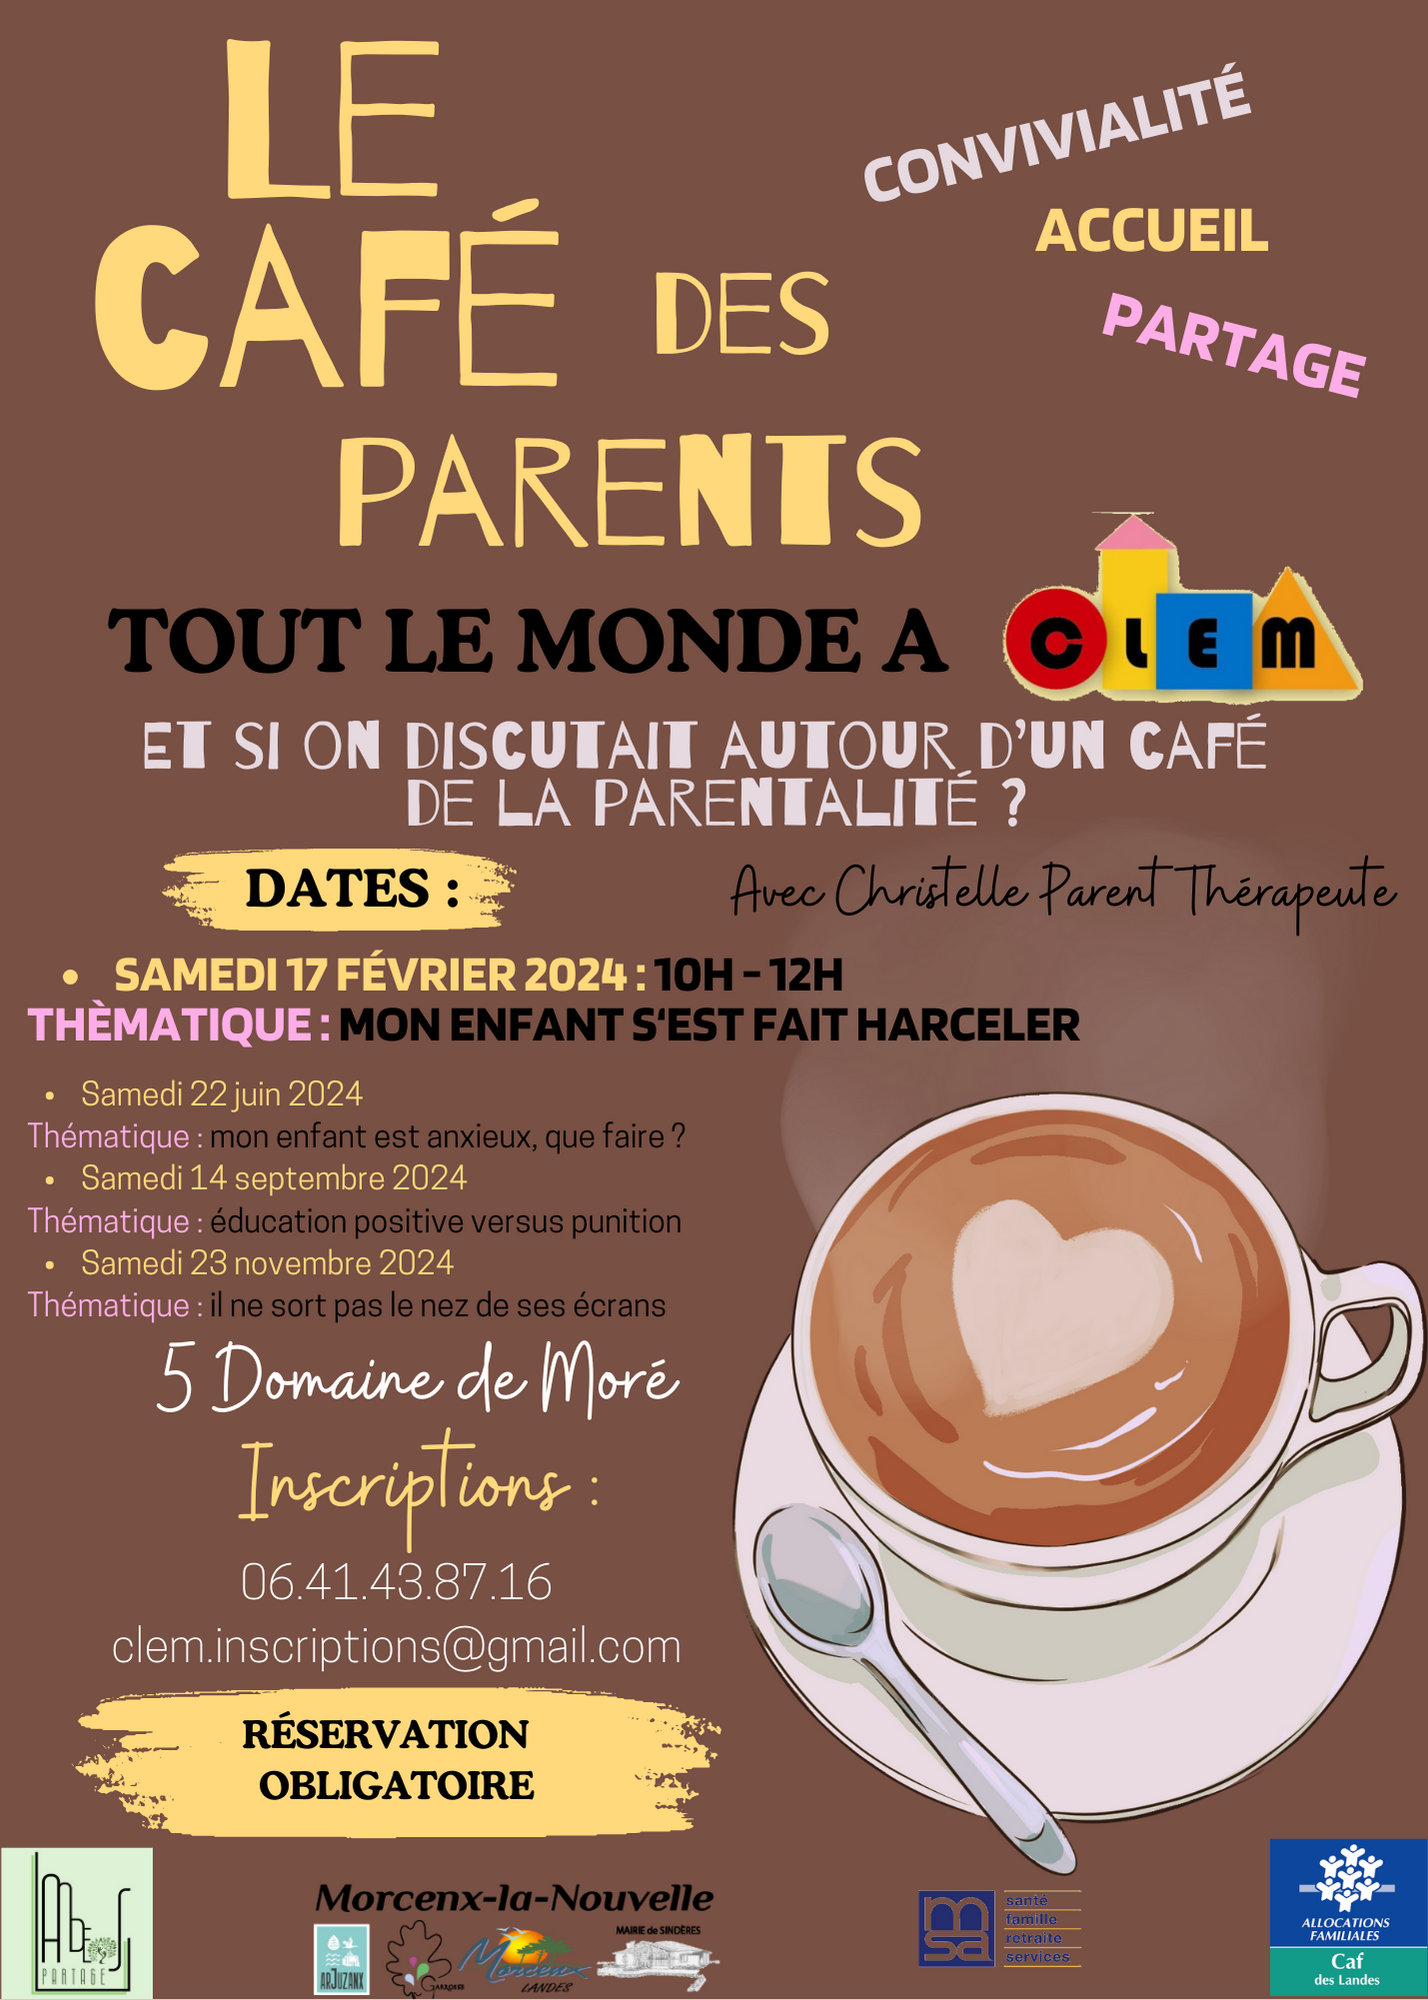 Le café des parents - La parentalité / L'anxiété null France null null null null